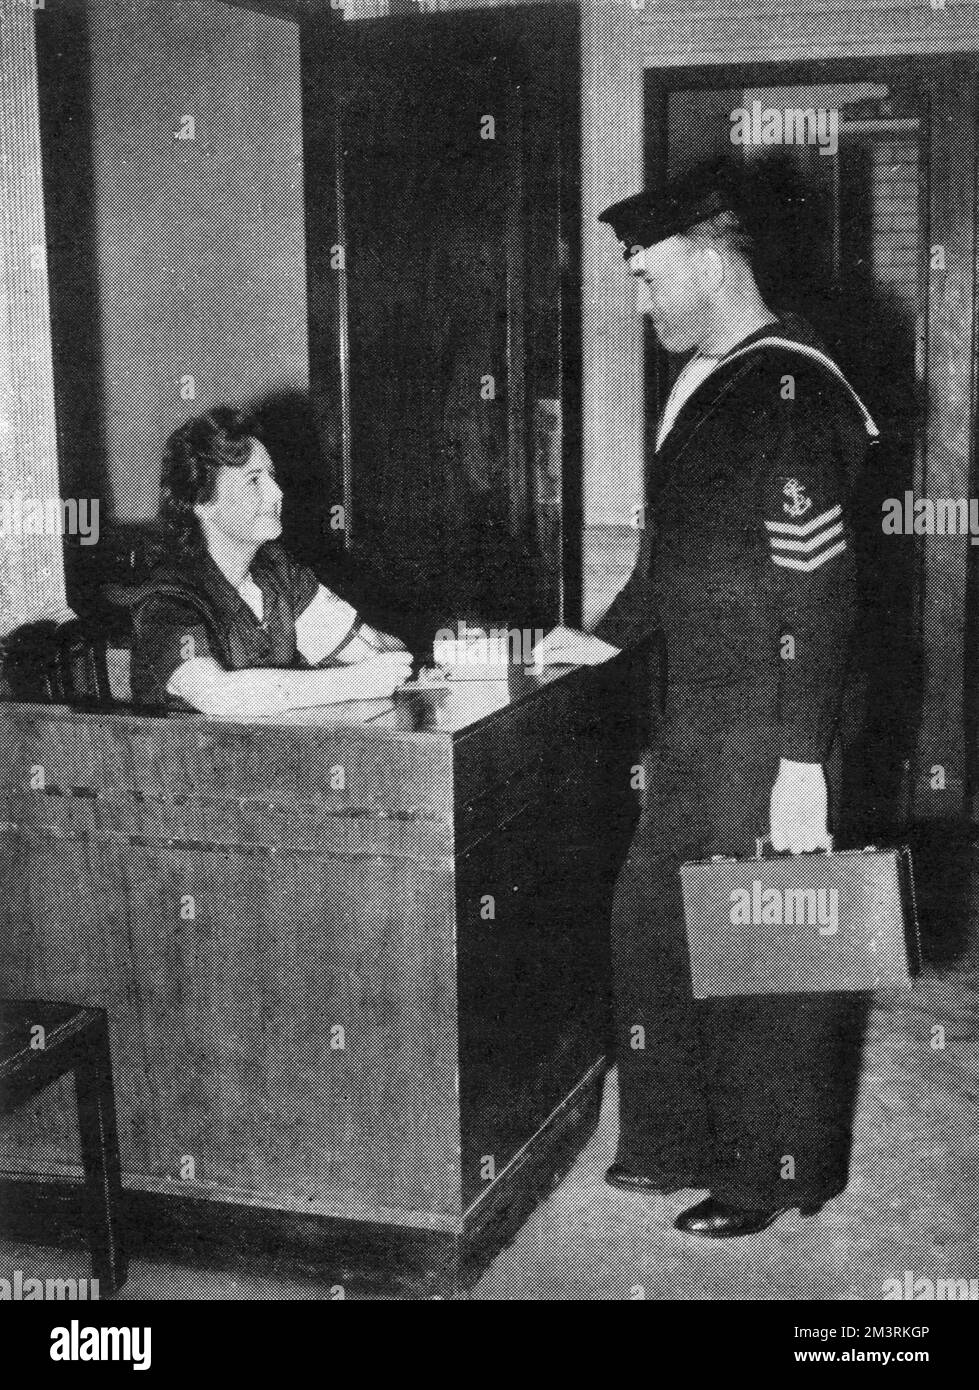 Un marinaio effettua il check-in presso l'ostello Y.M.C.A., ex ristorante Gatti's on the Strand, Londra. Gatti's fu presa in consegna dallo Y.M.C.A. come mensa per le truppe di stanza in città. 1940 Foto Stock